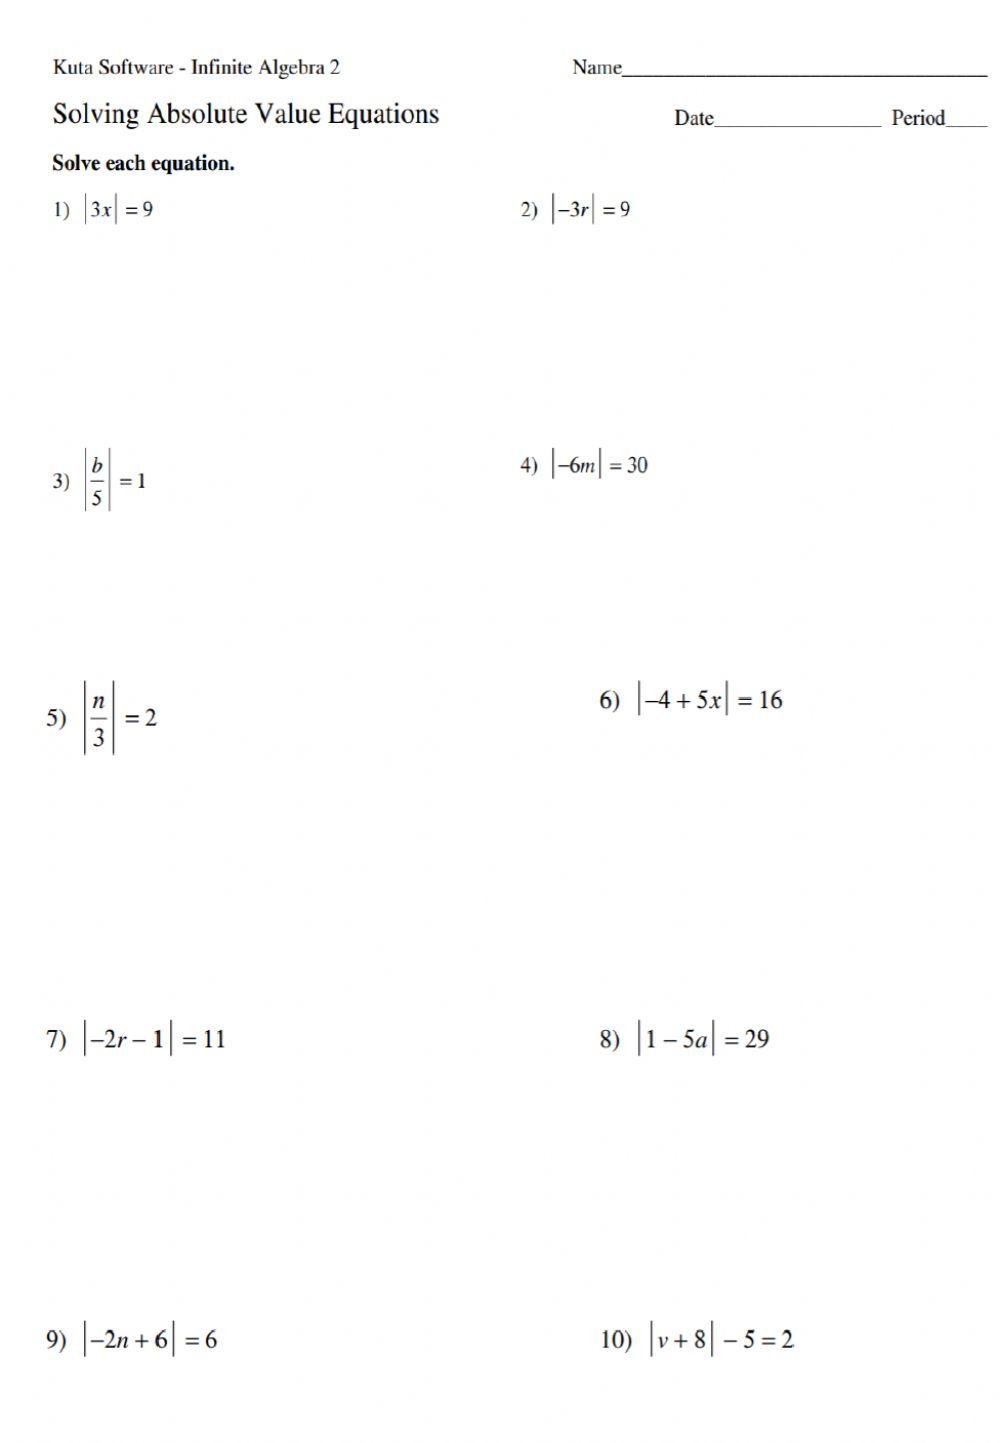 حل معادلات القيمة المطلقة 1